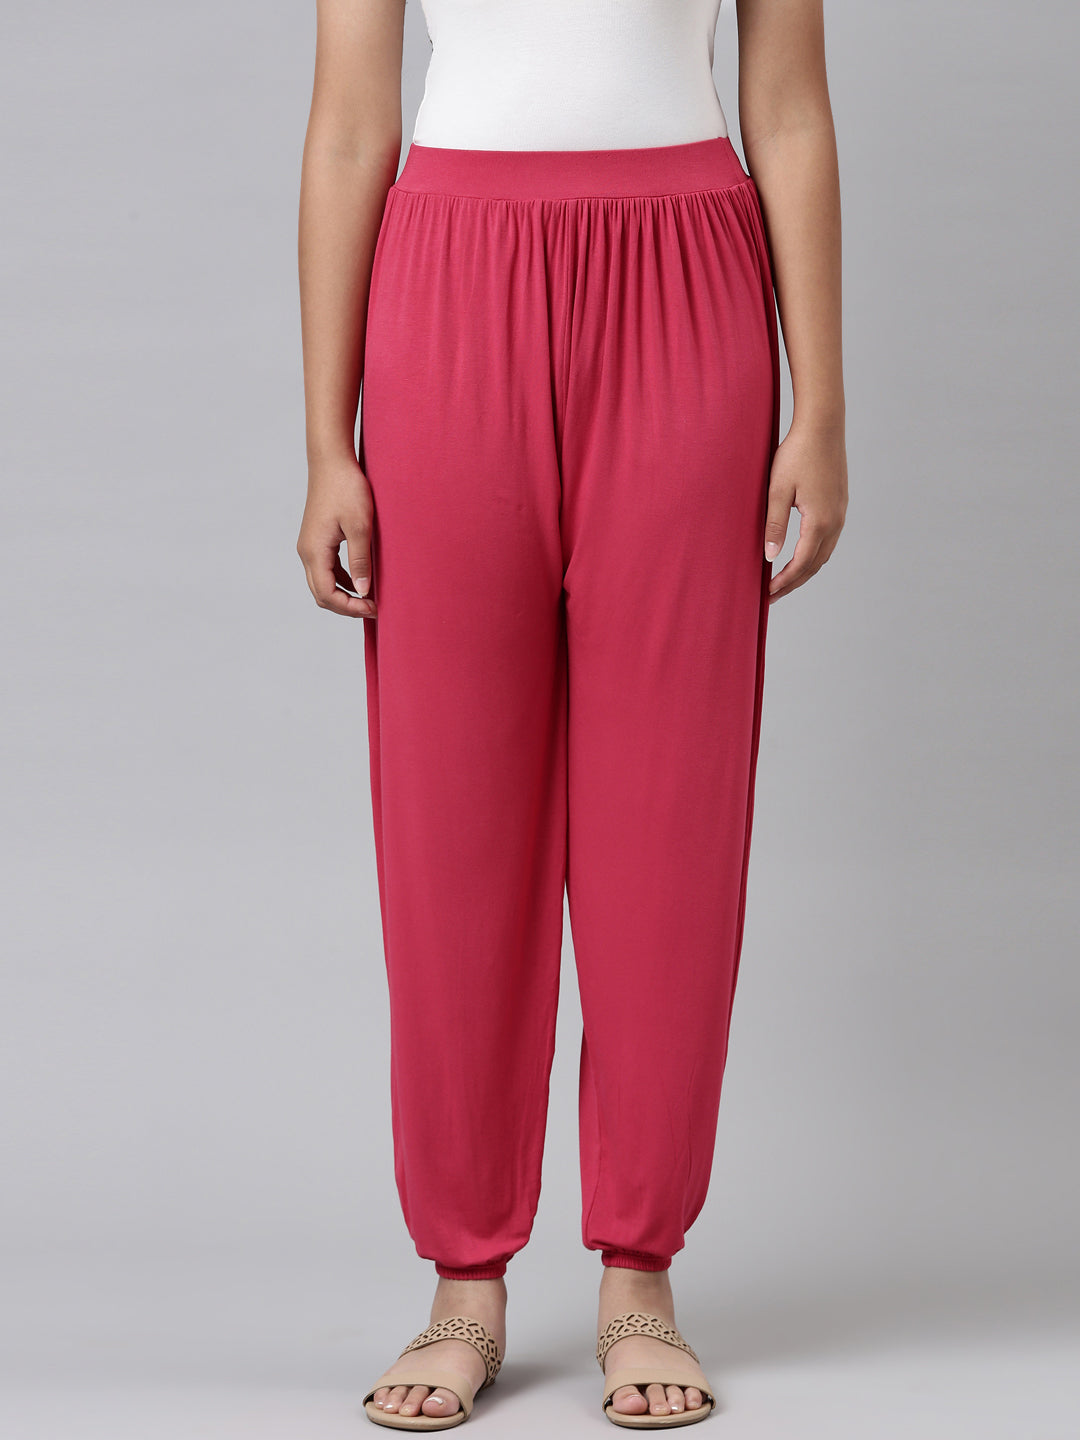 harem pants for girls Capri yoga pants plus size pants